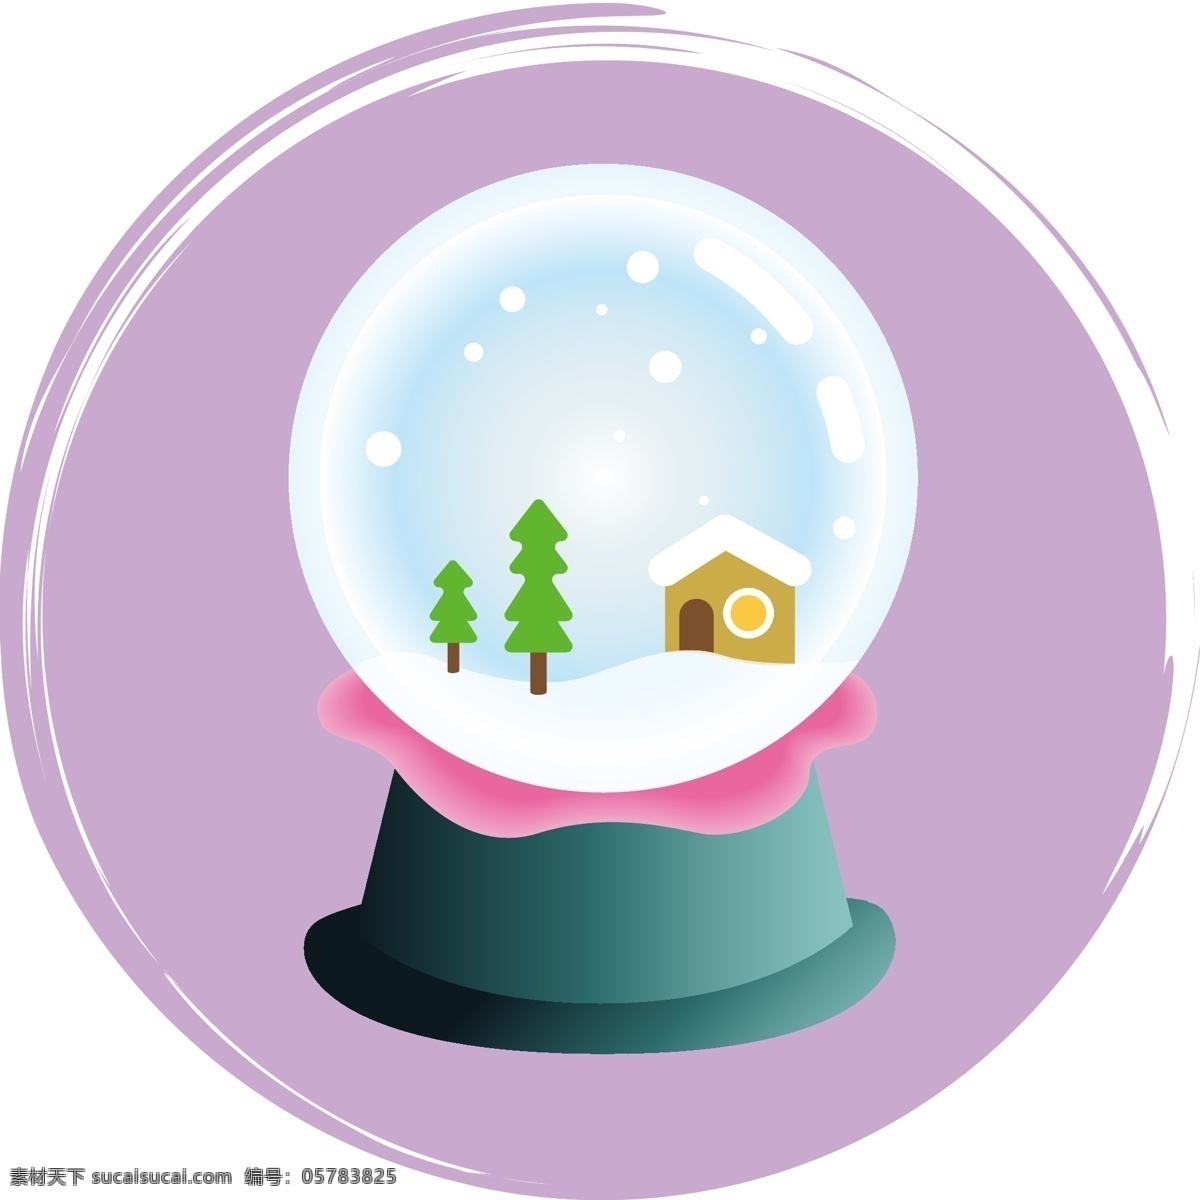 卡通 可爱 圣诞节 圣诞 装饰 球 小树 小屋 装饰球 飘雪